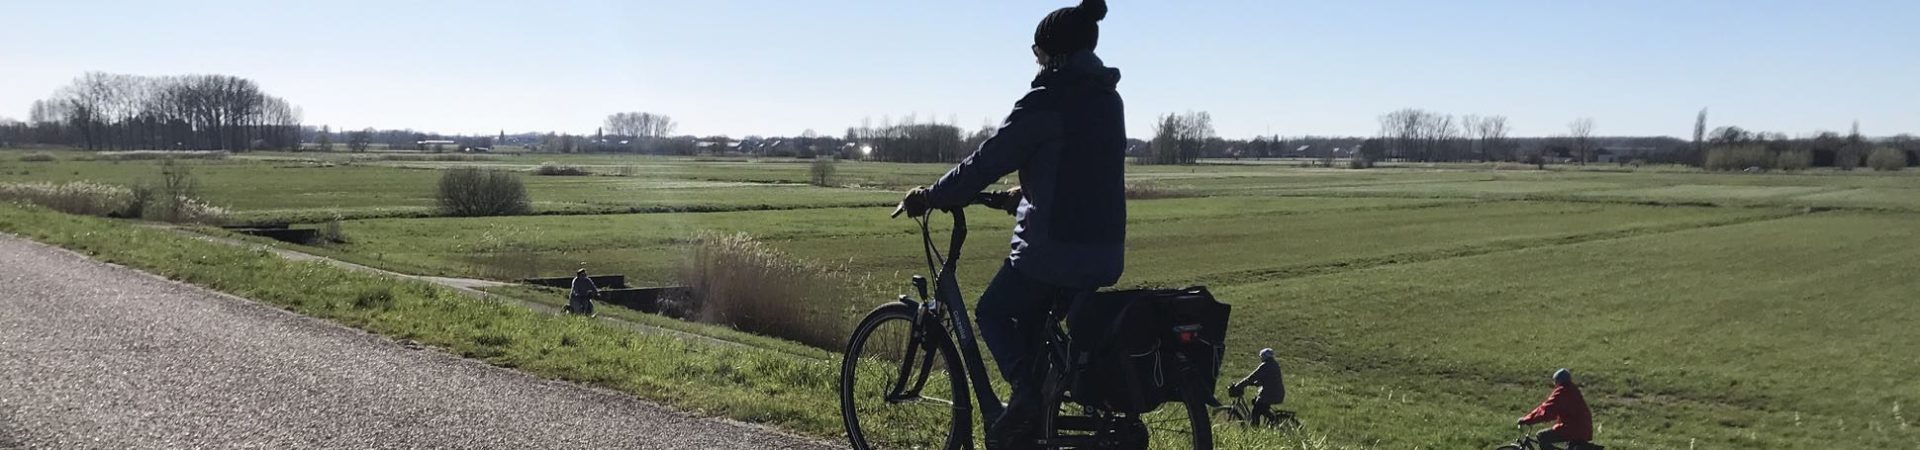 Fietsroute fietsblog review fietslus fietsverslagen scheldeland